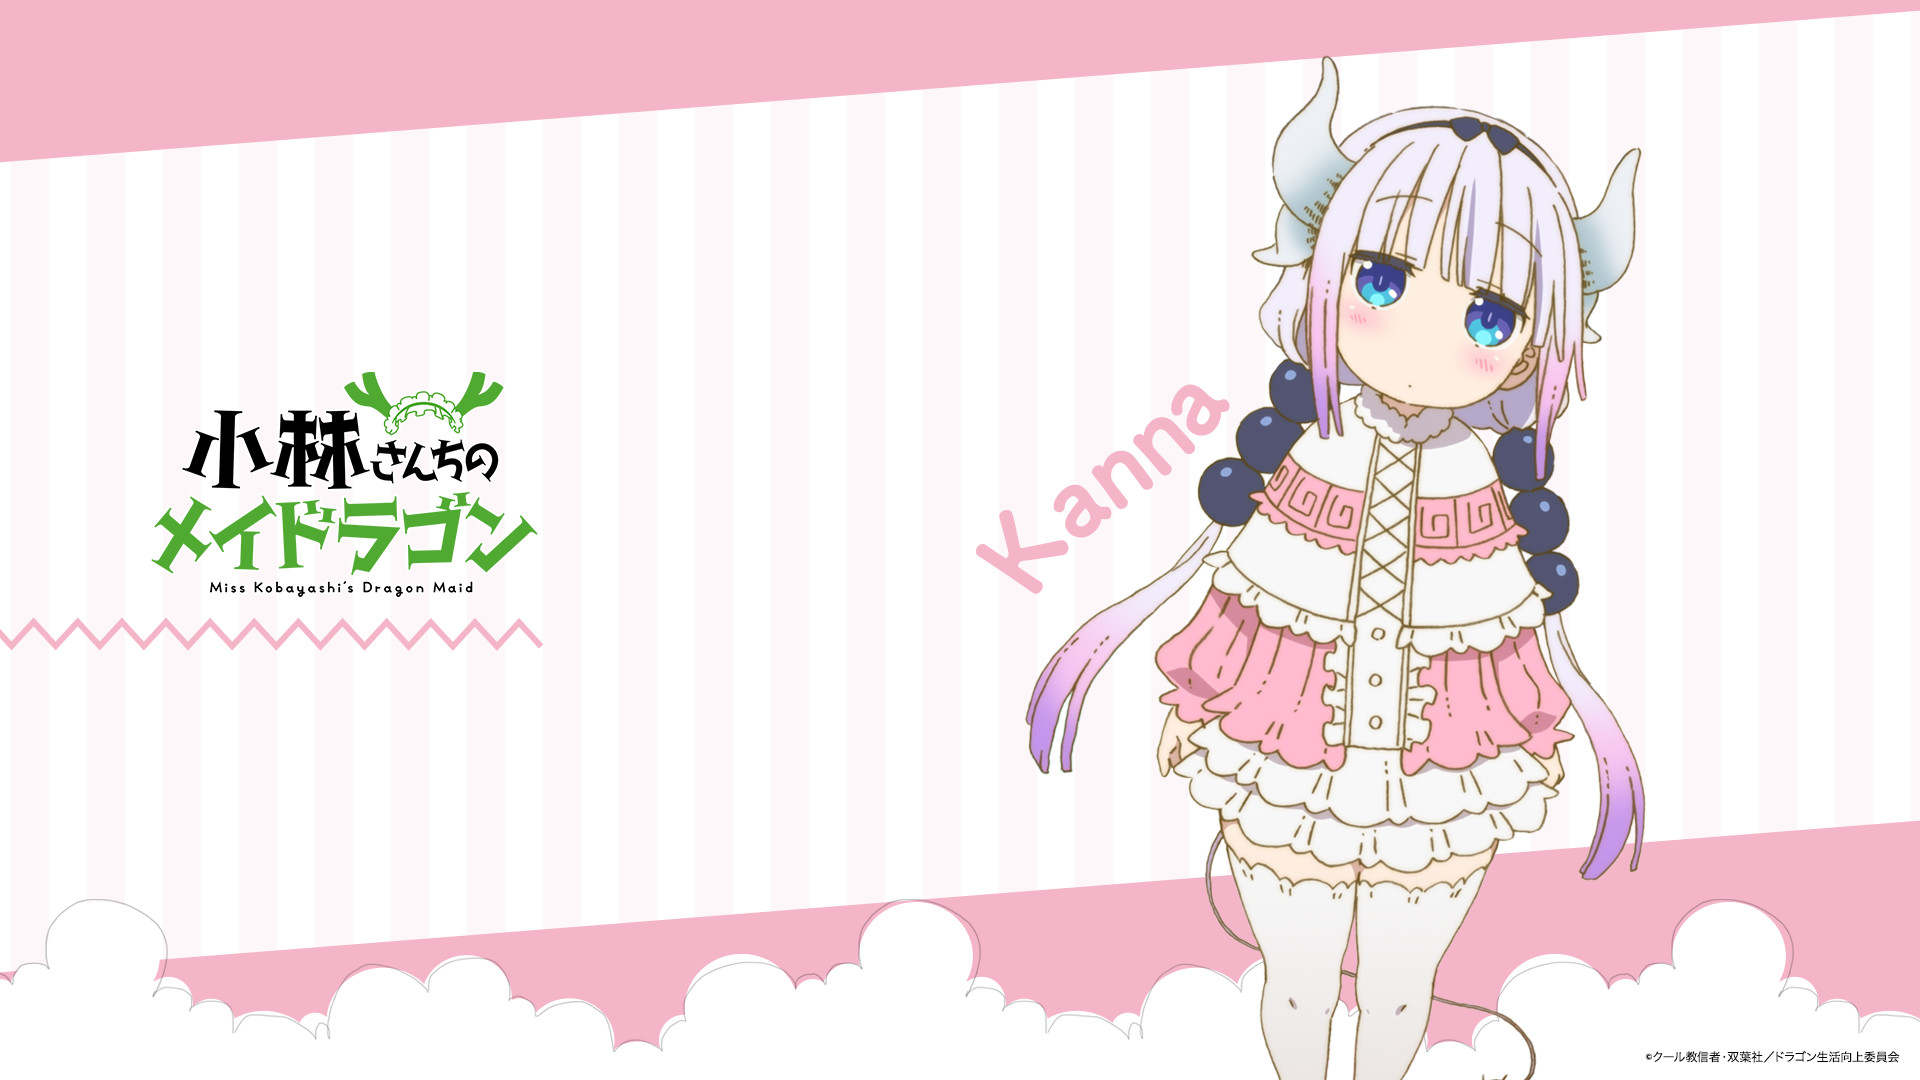 Kanna Kamui wallpaper by Vika_sj - Download on ZEDGE™ | 374b